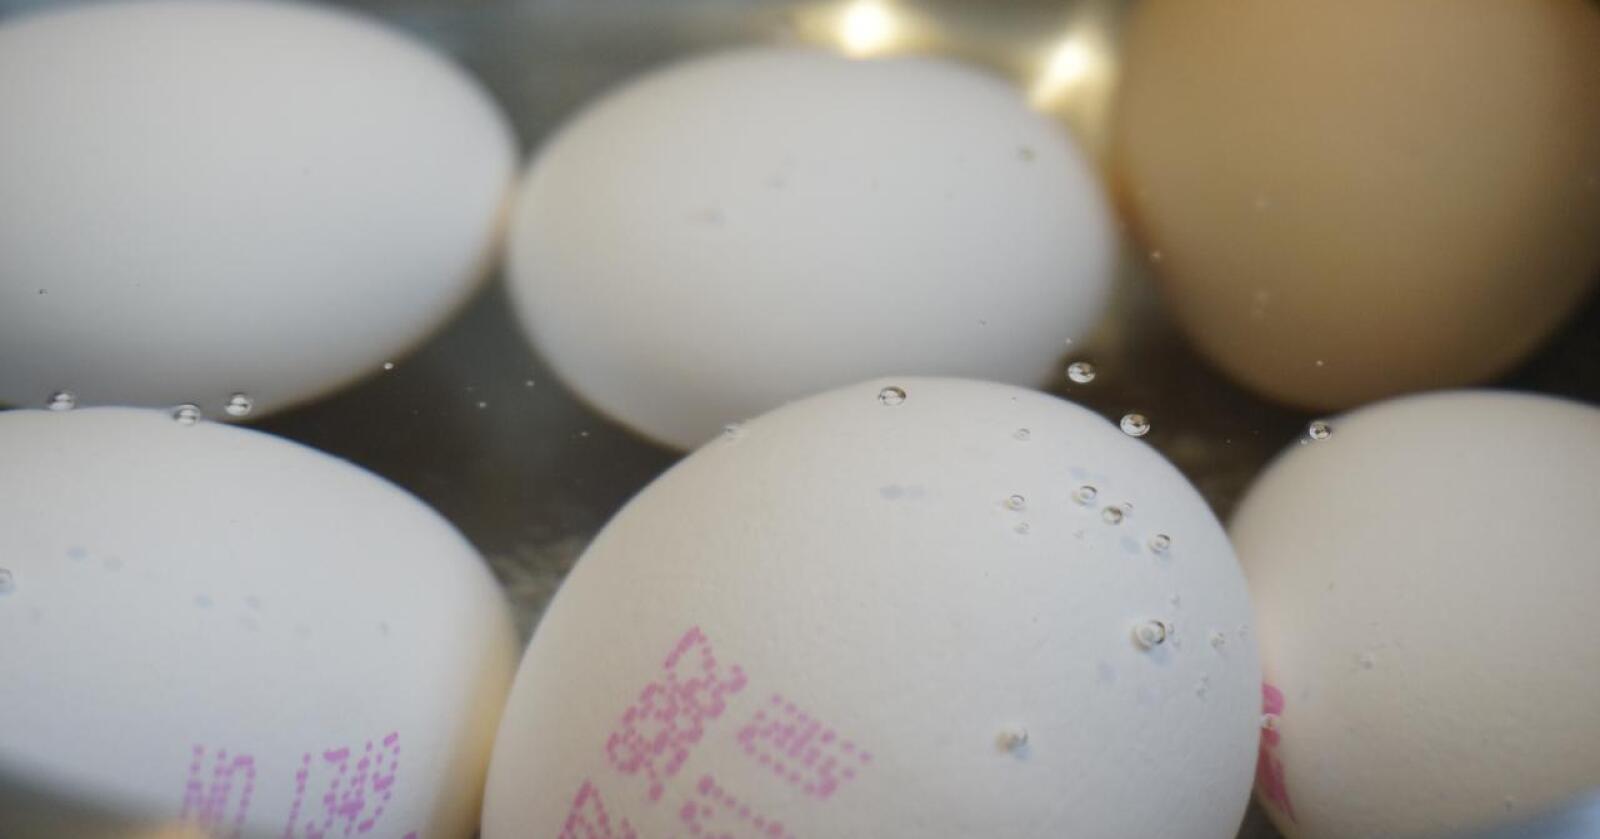 Mattilsynet sier fugleinfluensasituasjonen mest sannsynlig ikke kommer til å få bethydning for tilgangen på egg i butikkene. Foto: Mariann Tvete